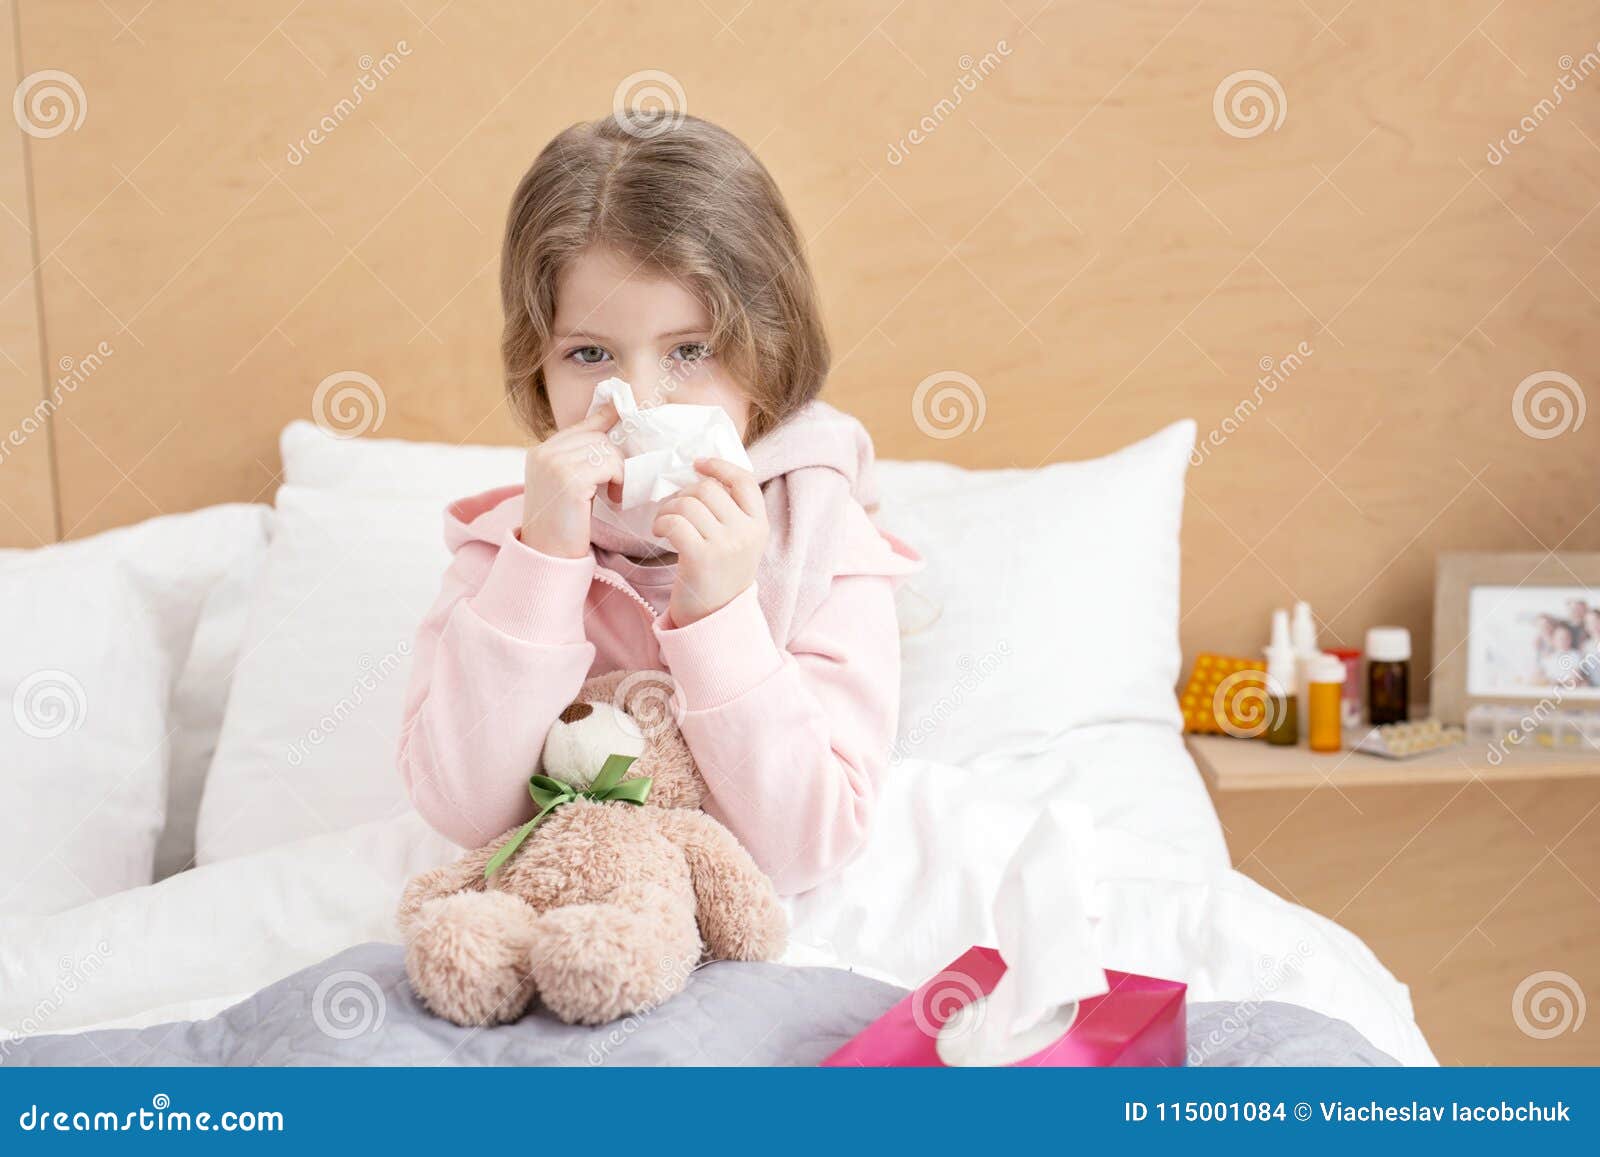 Месяц болею бронхитом. Девочка заболела. Девочка заболела для дошкольников. Часто болеющие дети. Простуда у девочки ребенка.